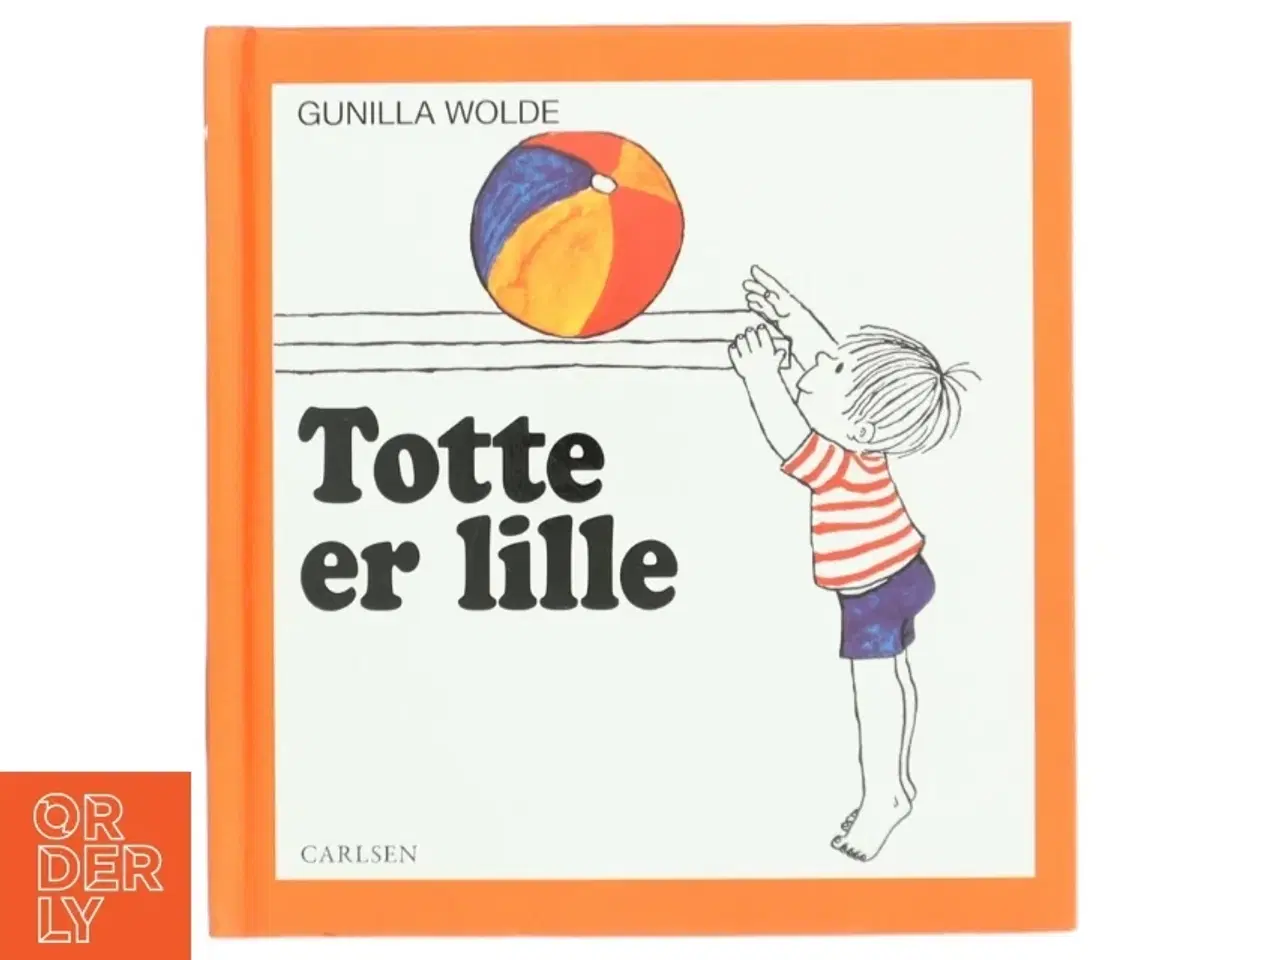 Billede 1 - 'Totte er lille' af Gunilla Wolde (bog)